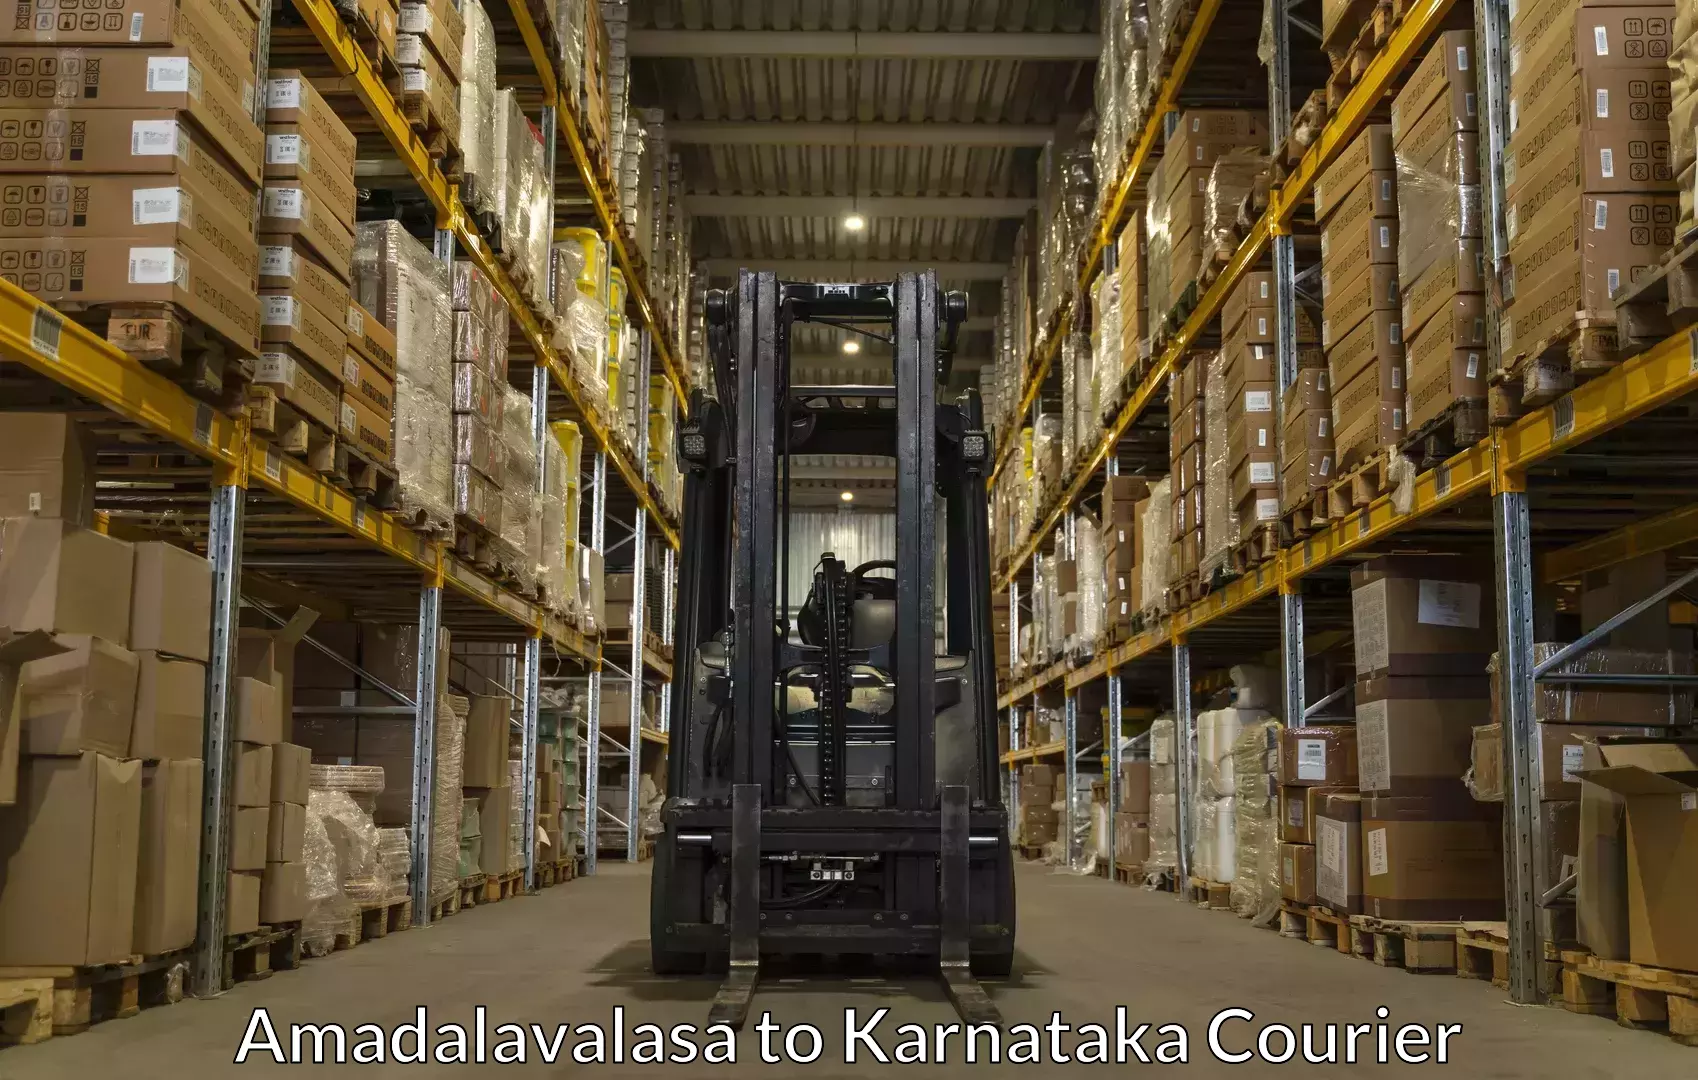 Moving and handling services Amadalavalasa to Mulbagal